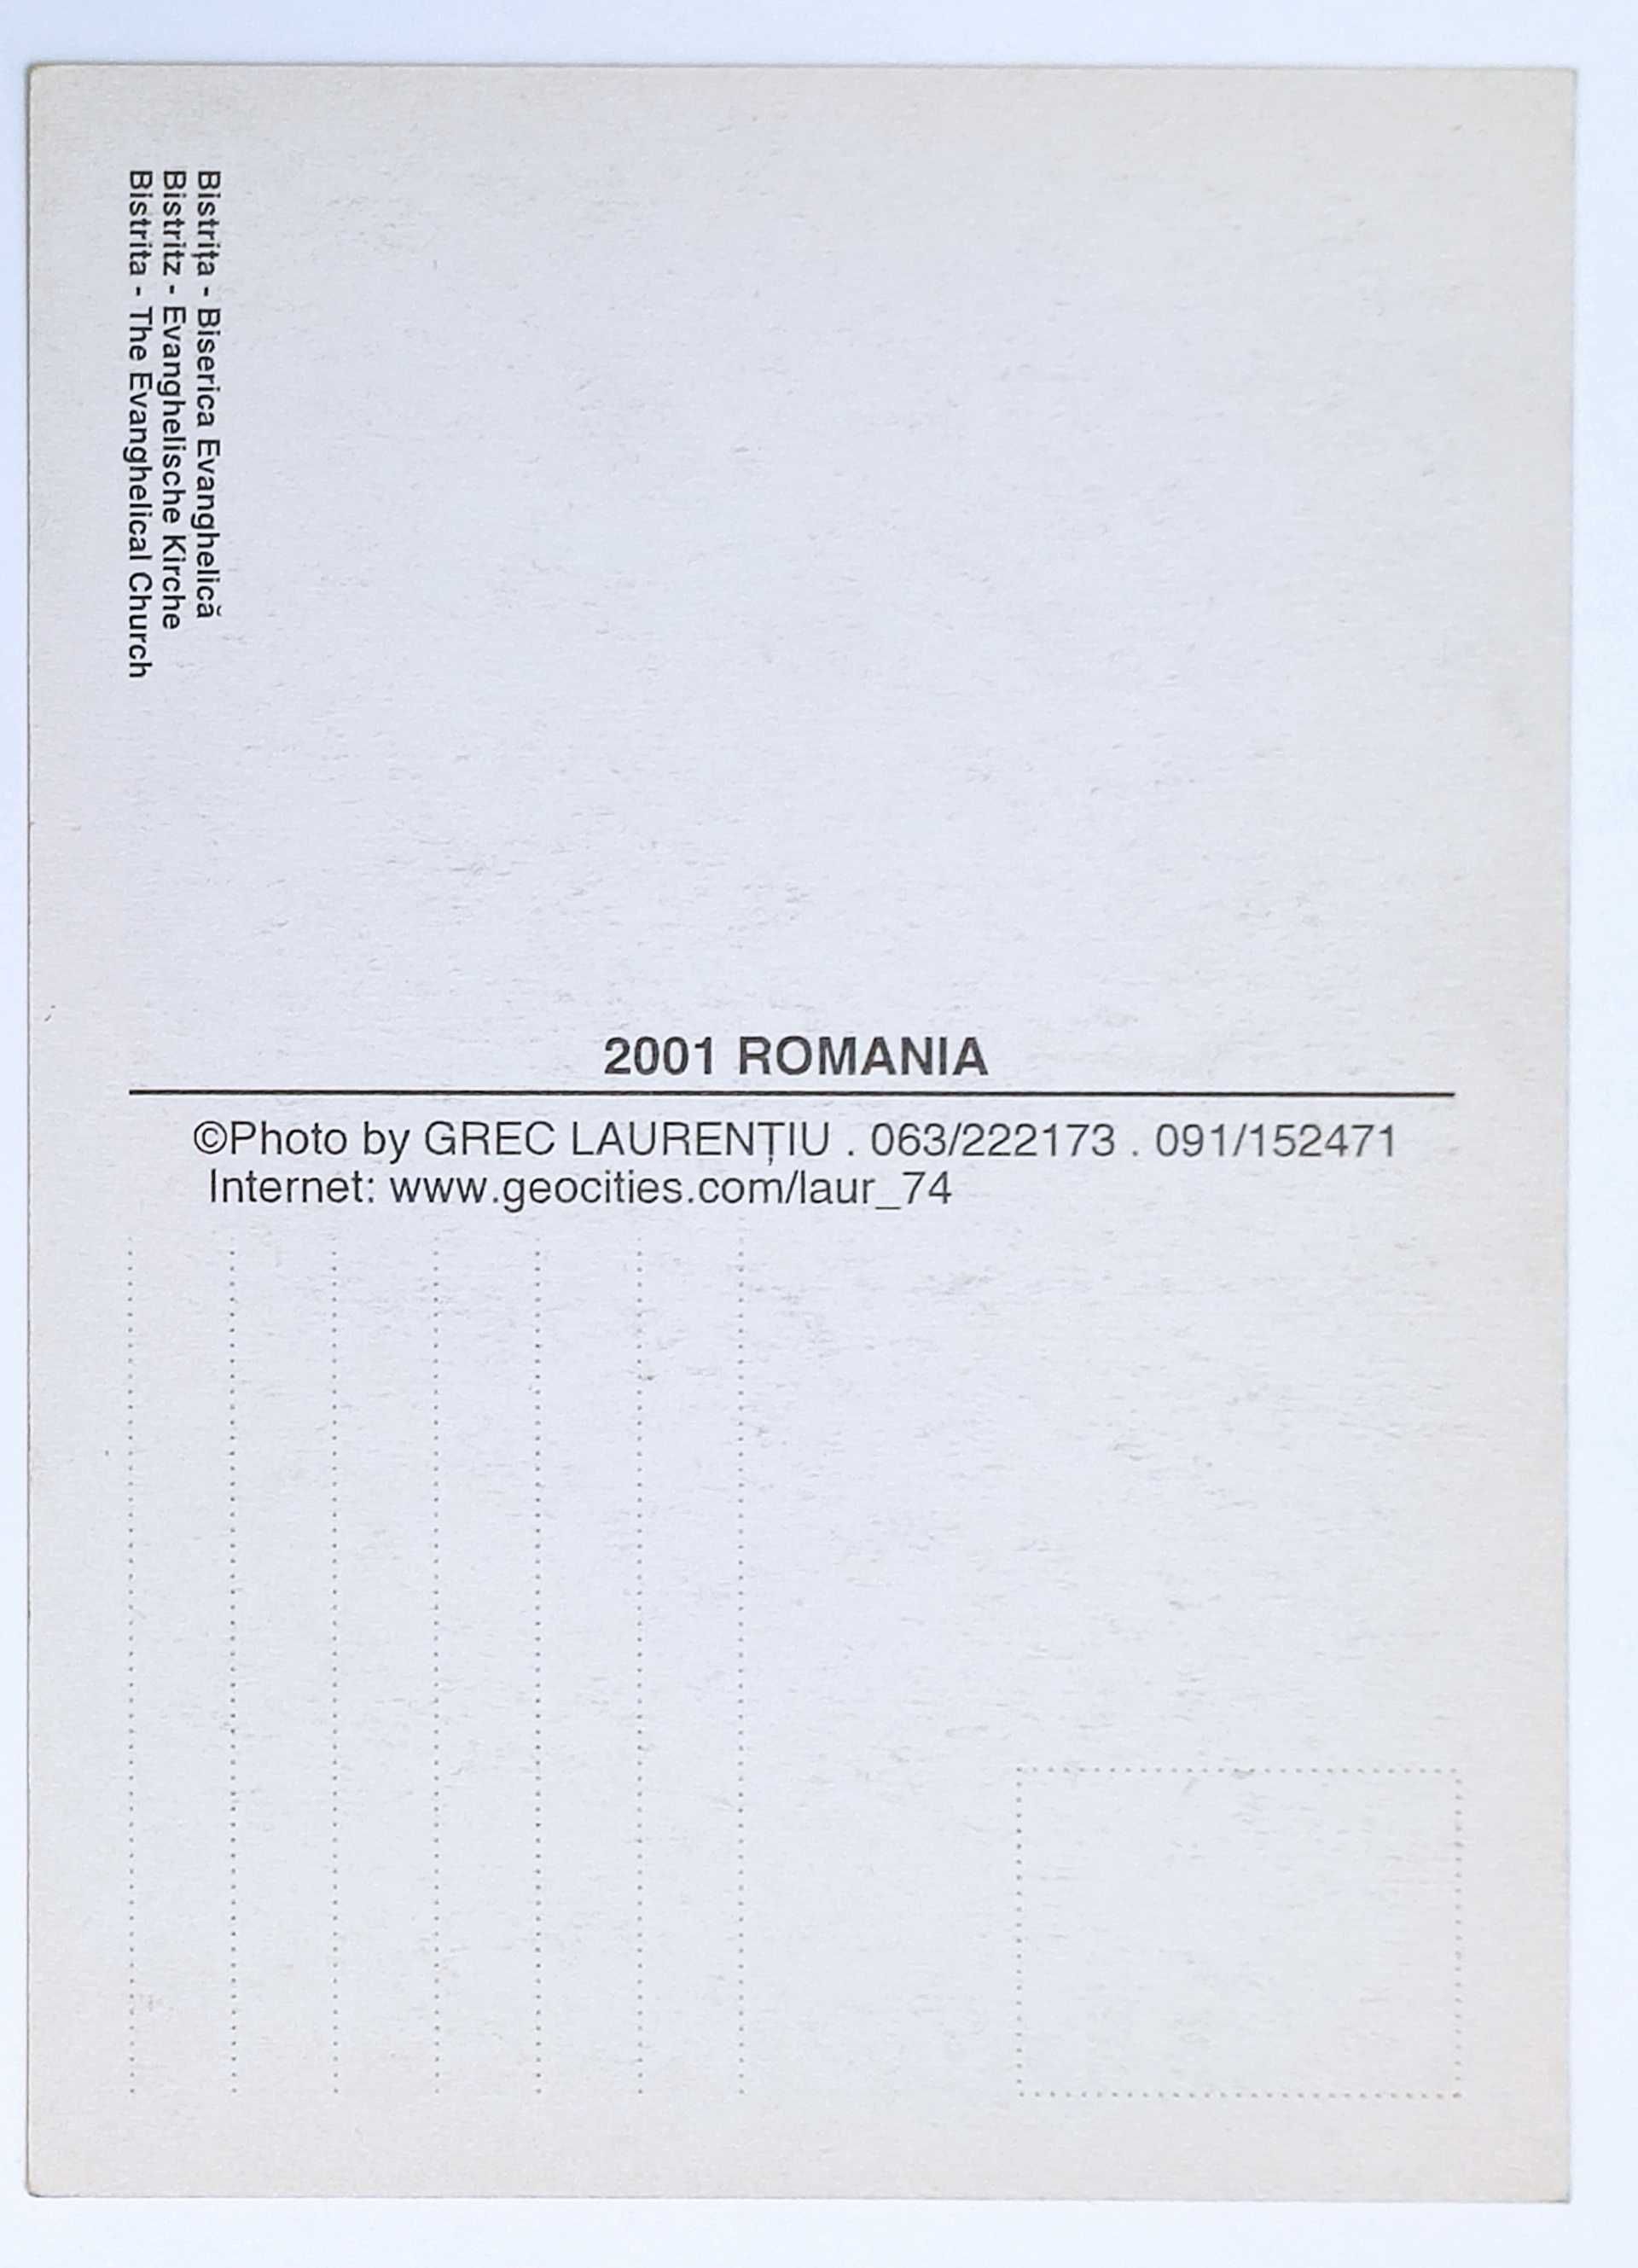 10 Cărți poștale Bistrița,2001- Necirculate, Autor Grec Laurentiu ,